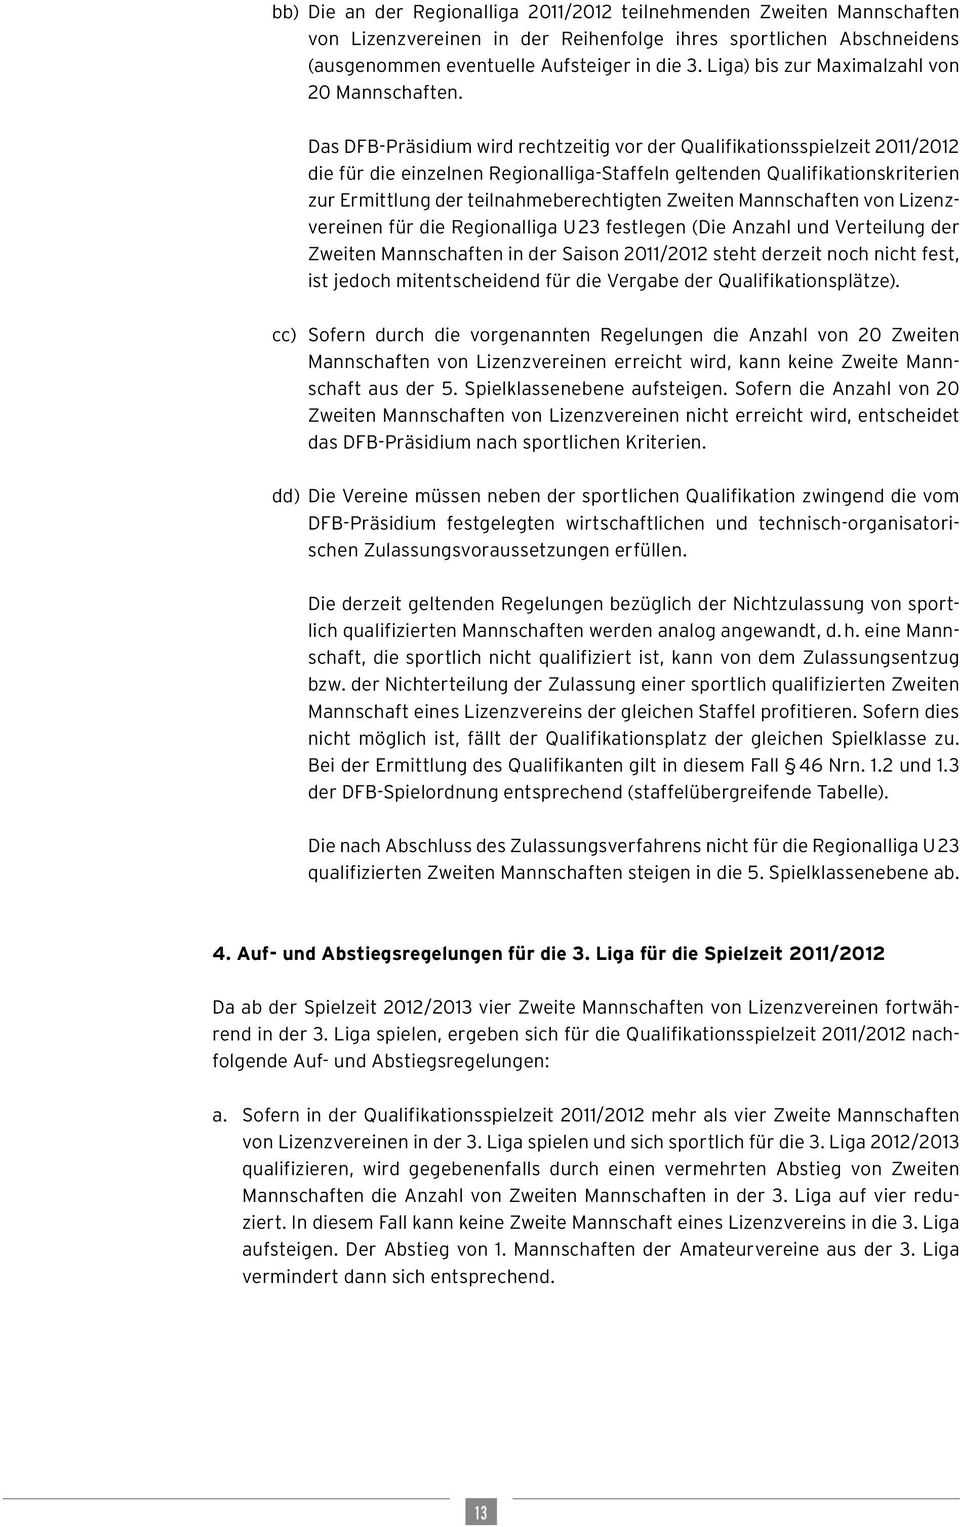 Das DFB-Präsidium wird rechtzeitig vor der Qualifikationsspielzeit 2011/2012 die für die einzelnen Regionalliga-Staffeln geltenden Qualifikationskriterien zur Ermittlung der teilnahmeberechtigten